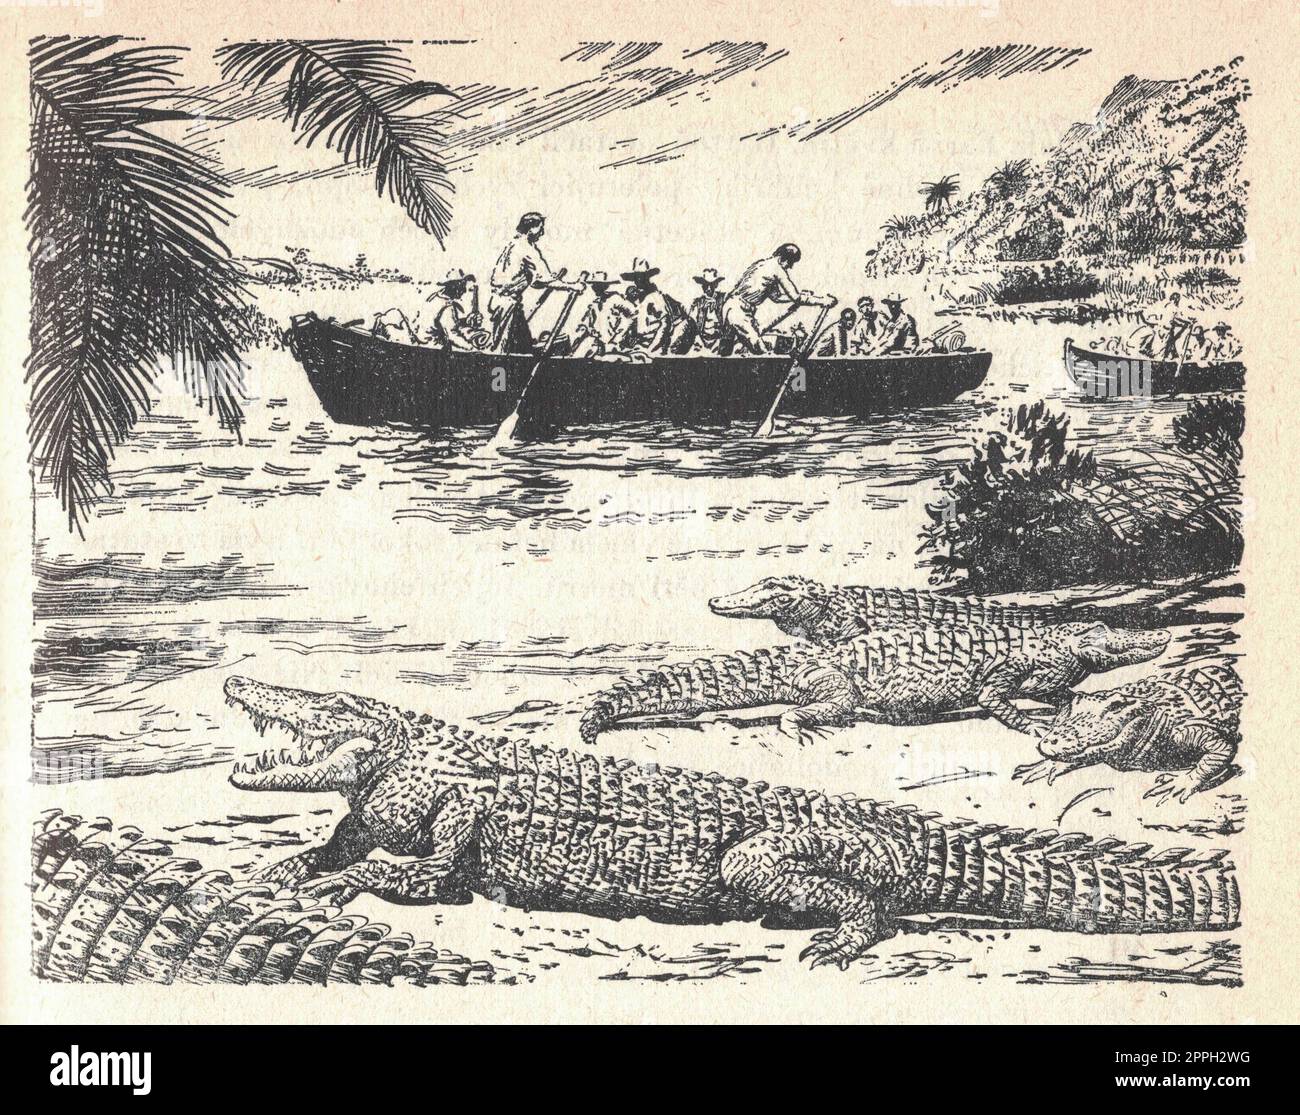 Le bateau navigue sur la rivière. Crocodiles sur le bord de la mer. Vieille illustration en noir et blanc. Dessin vintage. Illustration de Zdenek Burian. Banque D'Images